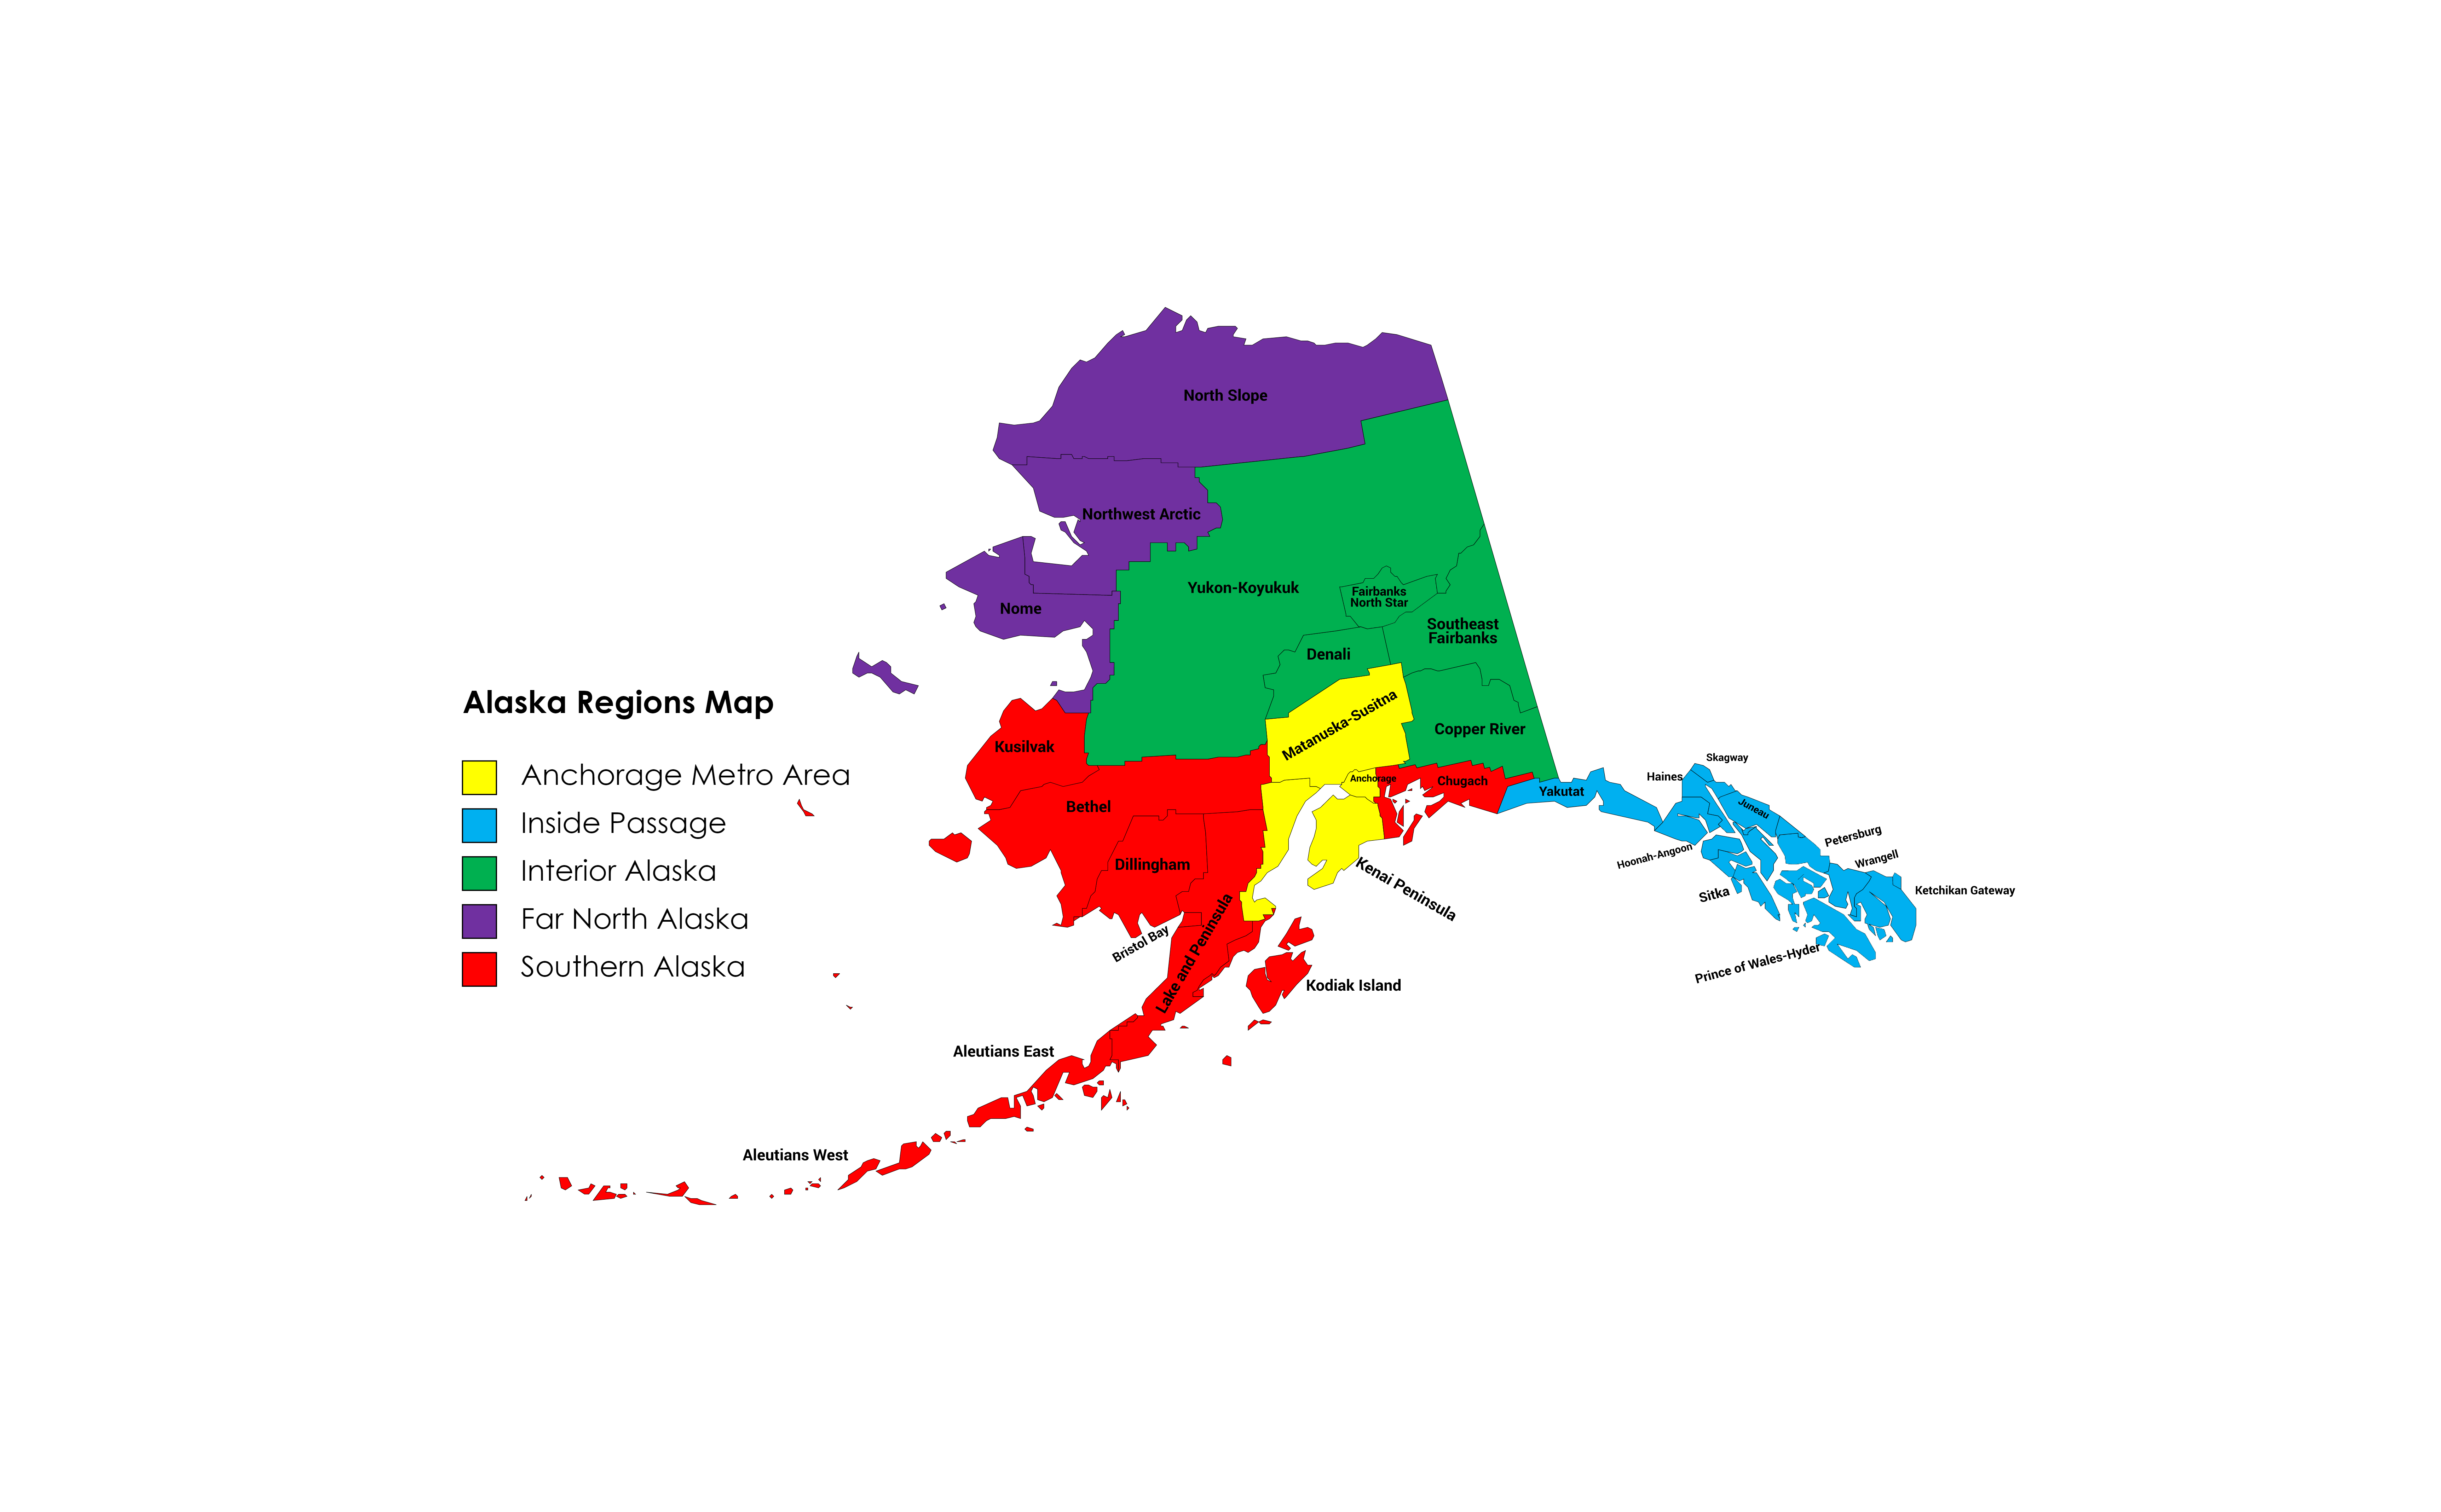 Alaska_Regions_Map